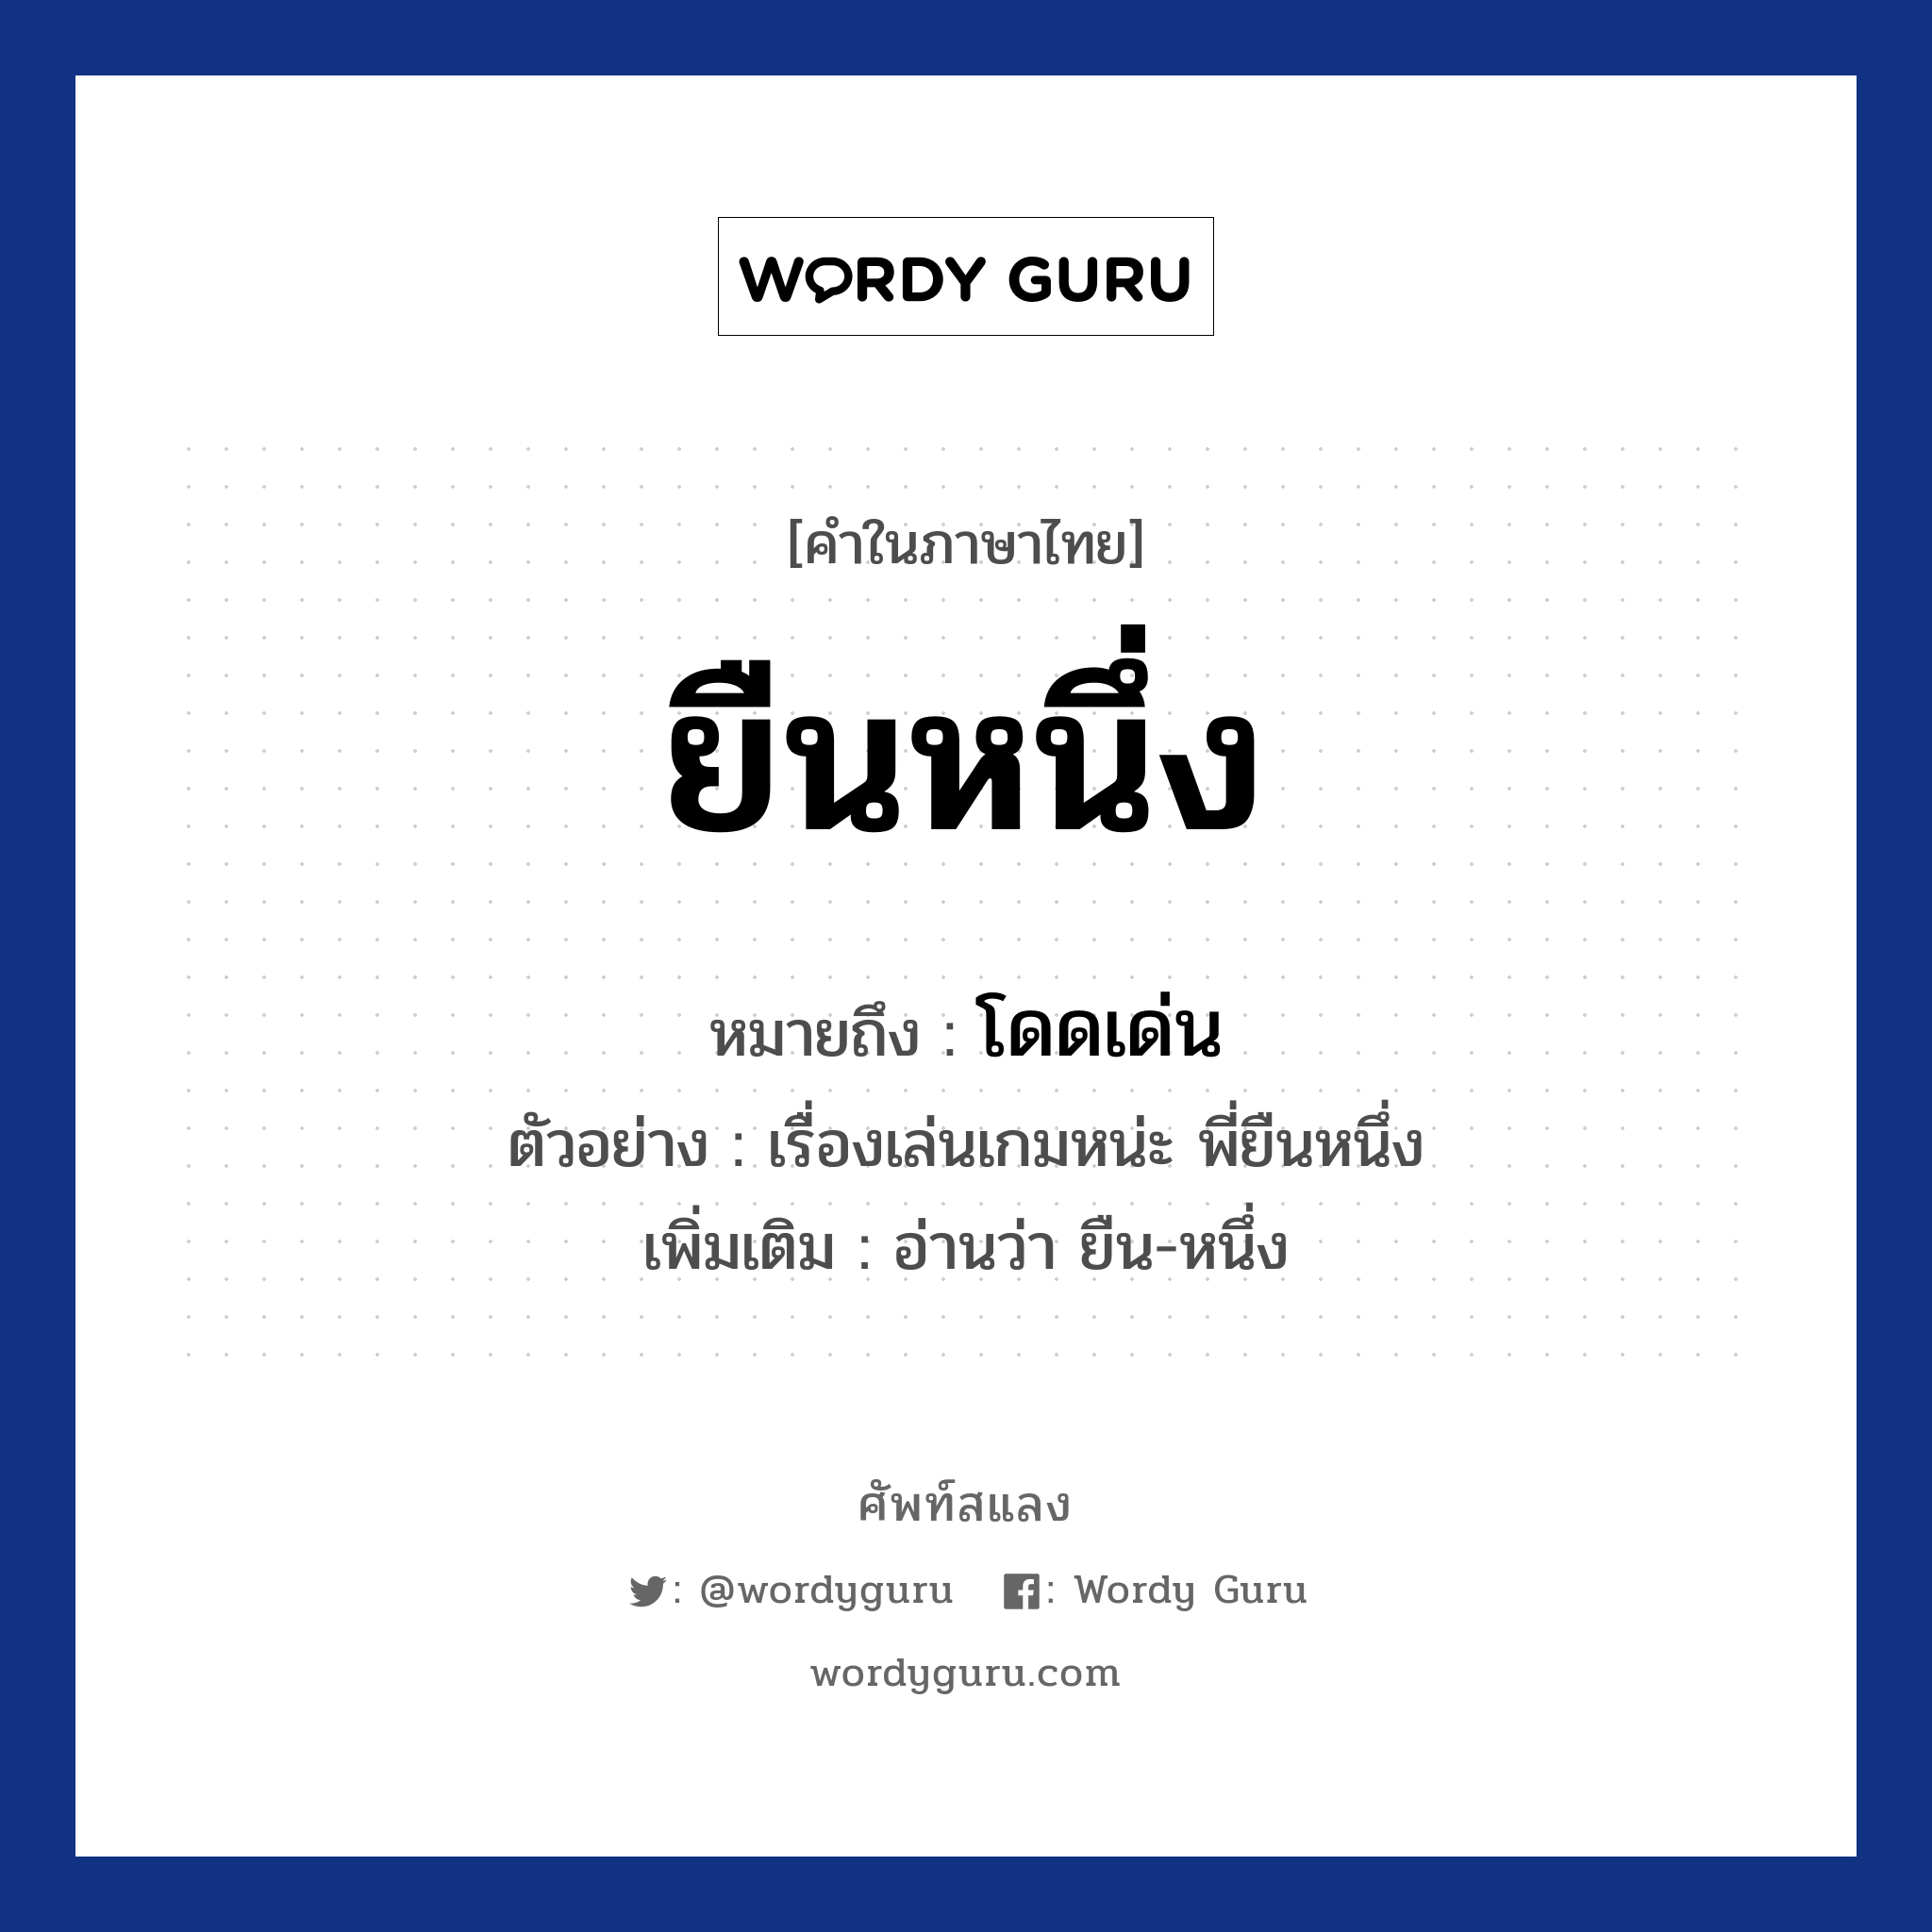 ยืนหนึ่ง หมายถึงอะไร?, คำไทย ยืนหนึ่ง คำในภาษาไทย ยืนหนึ่ง หมายถึง โดดเด่น ตัวอย่าง เรื่องเล่นเกมหน่ะ พี่ยืนหนึ่ง เพิ่มเติม อ่านว่า ยืน-หนึ่ง